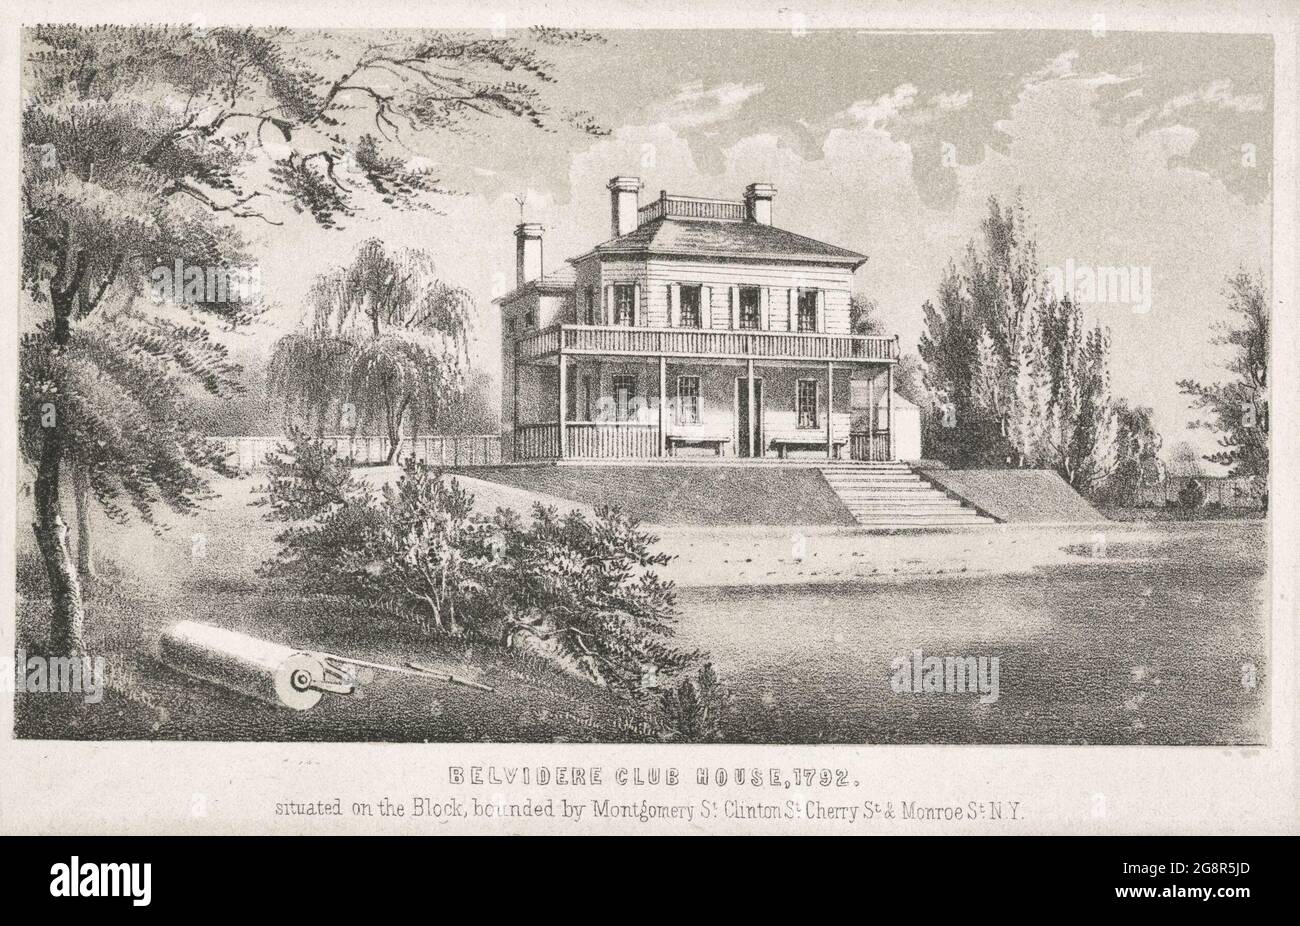 Belvidere Club House, 1792 ans, situé sur le bloc bordé par Montgomery St. Clinton St., Cherry St. et Monroe St. Banque D'Images